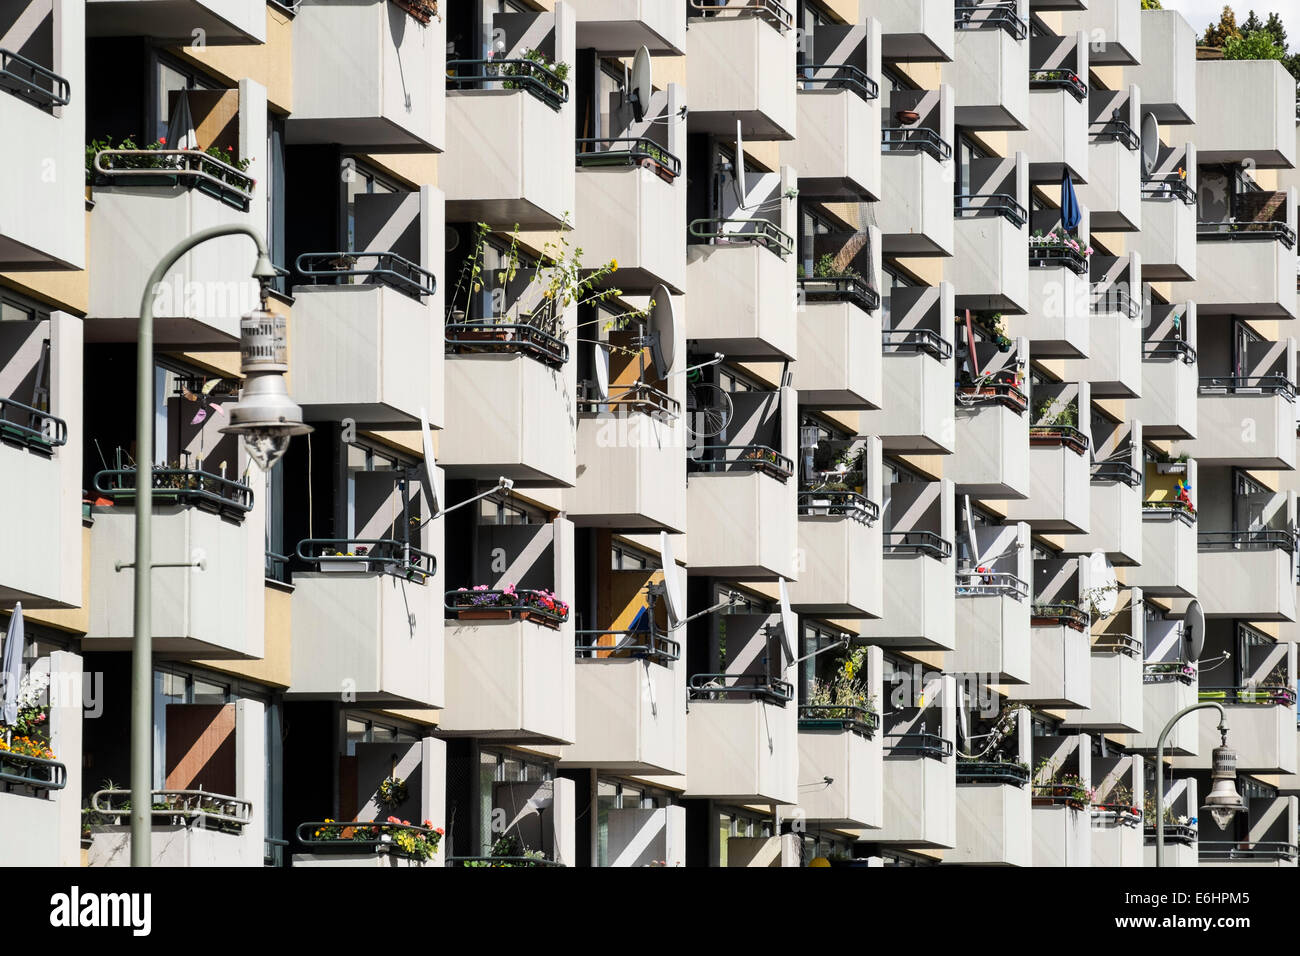 De nombreux balcons vue géométrique sur un immeuble d'appartements dans le centre de Berlin, Allemagne Banque D'Images